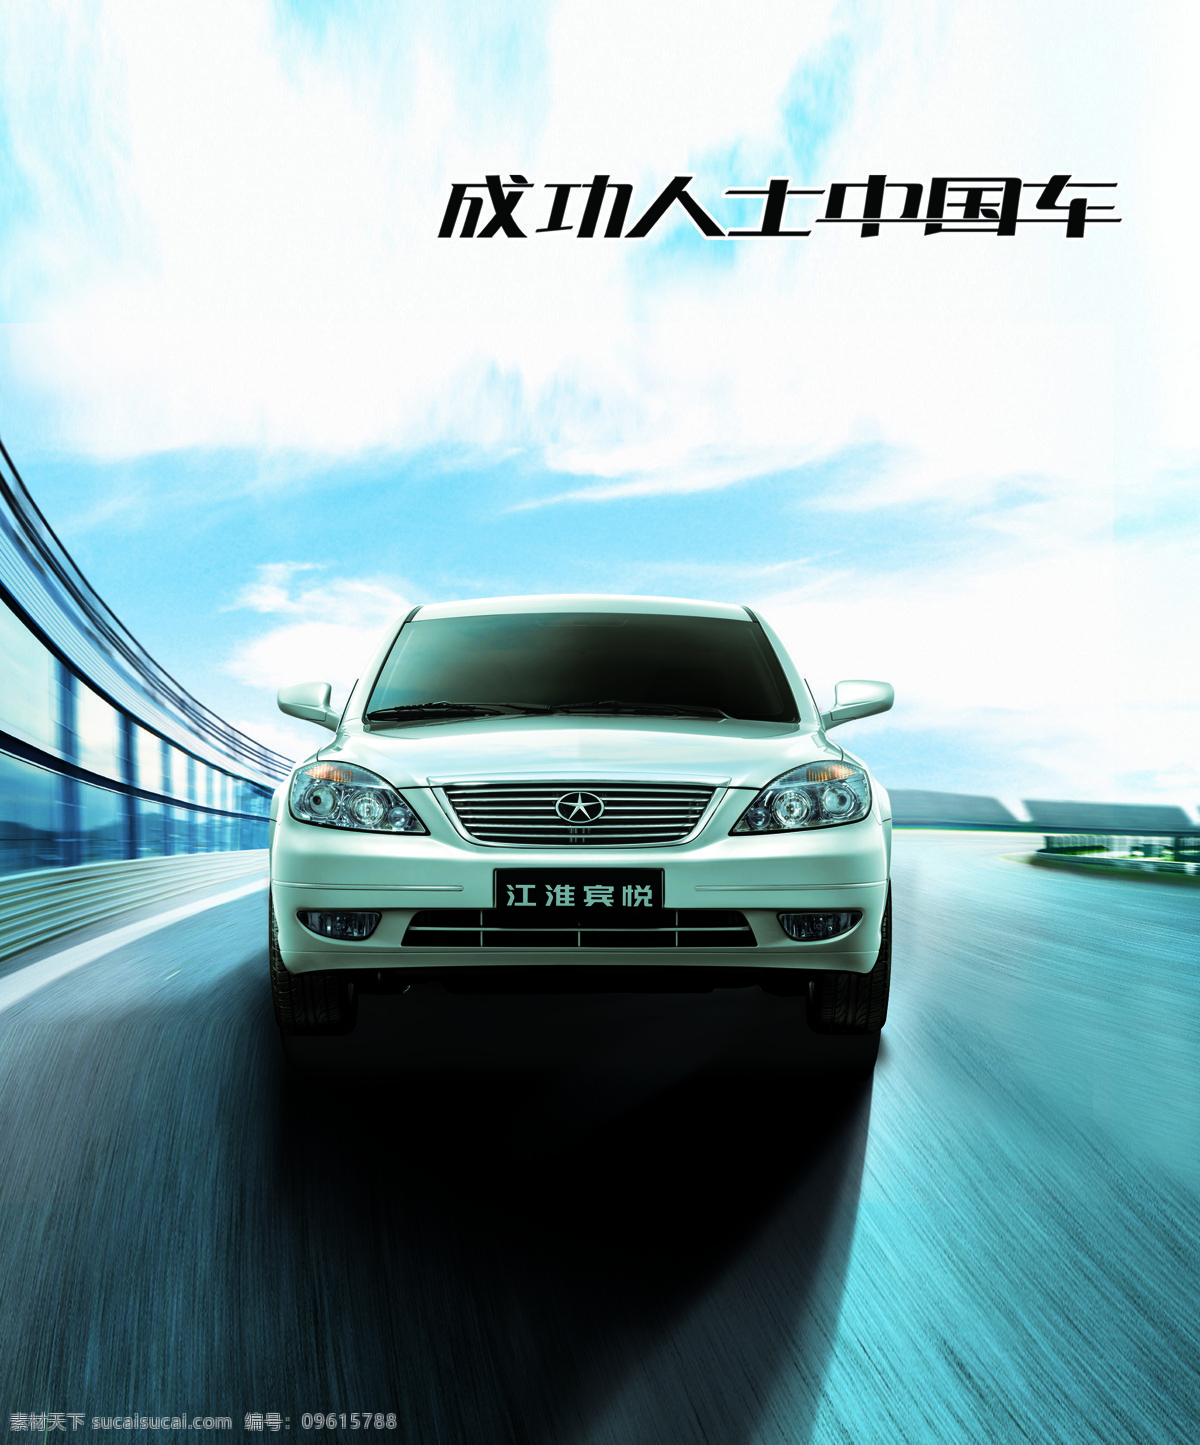 江淮 宾 悦 轿车 汽车 工业生产 小车 跑车 交通工具 品牌轿车 汽车图片 现代科技